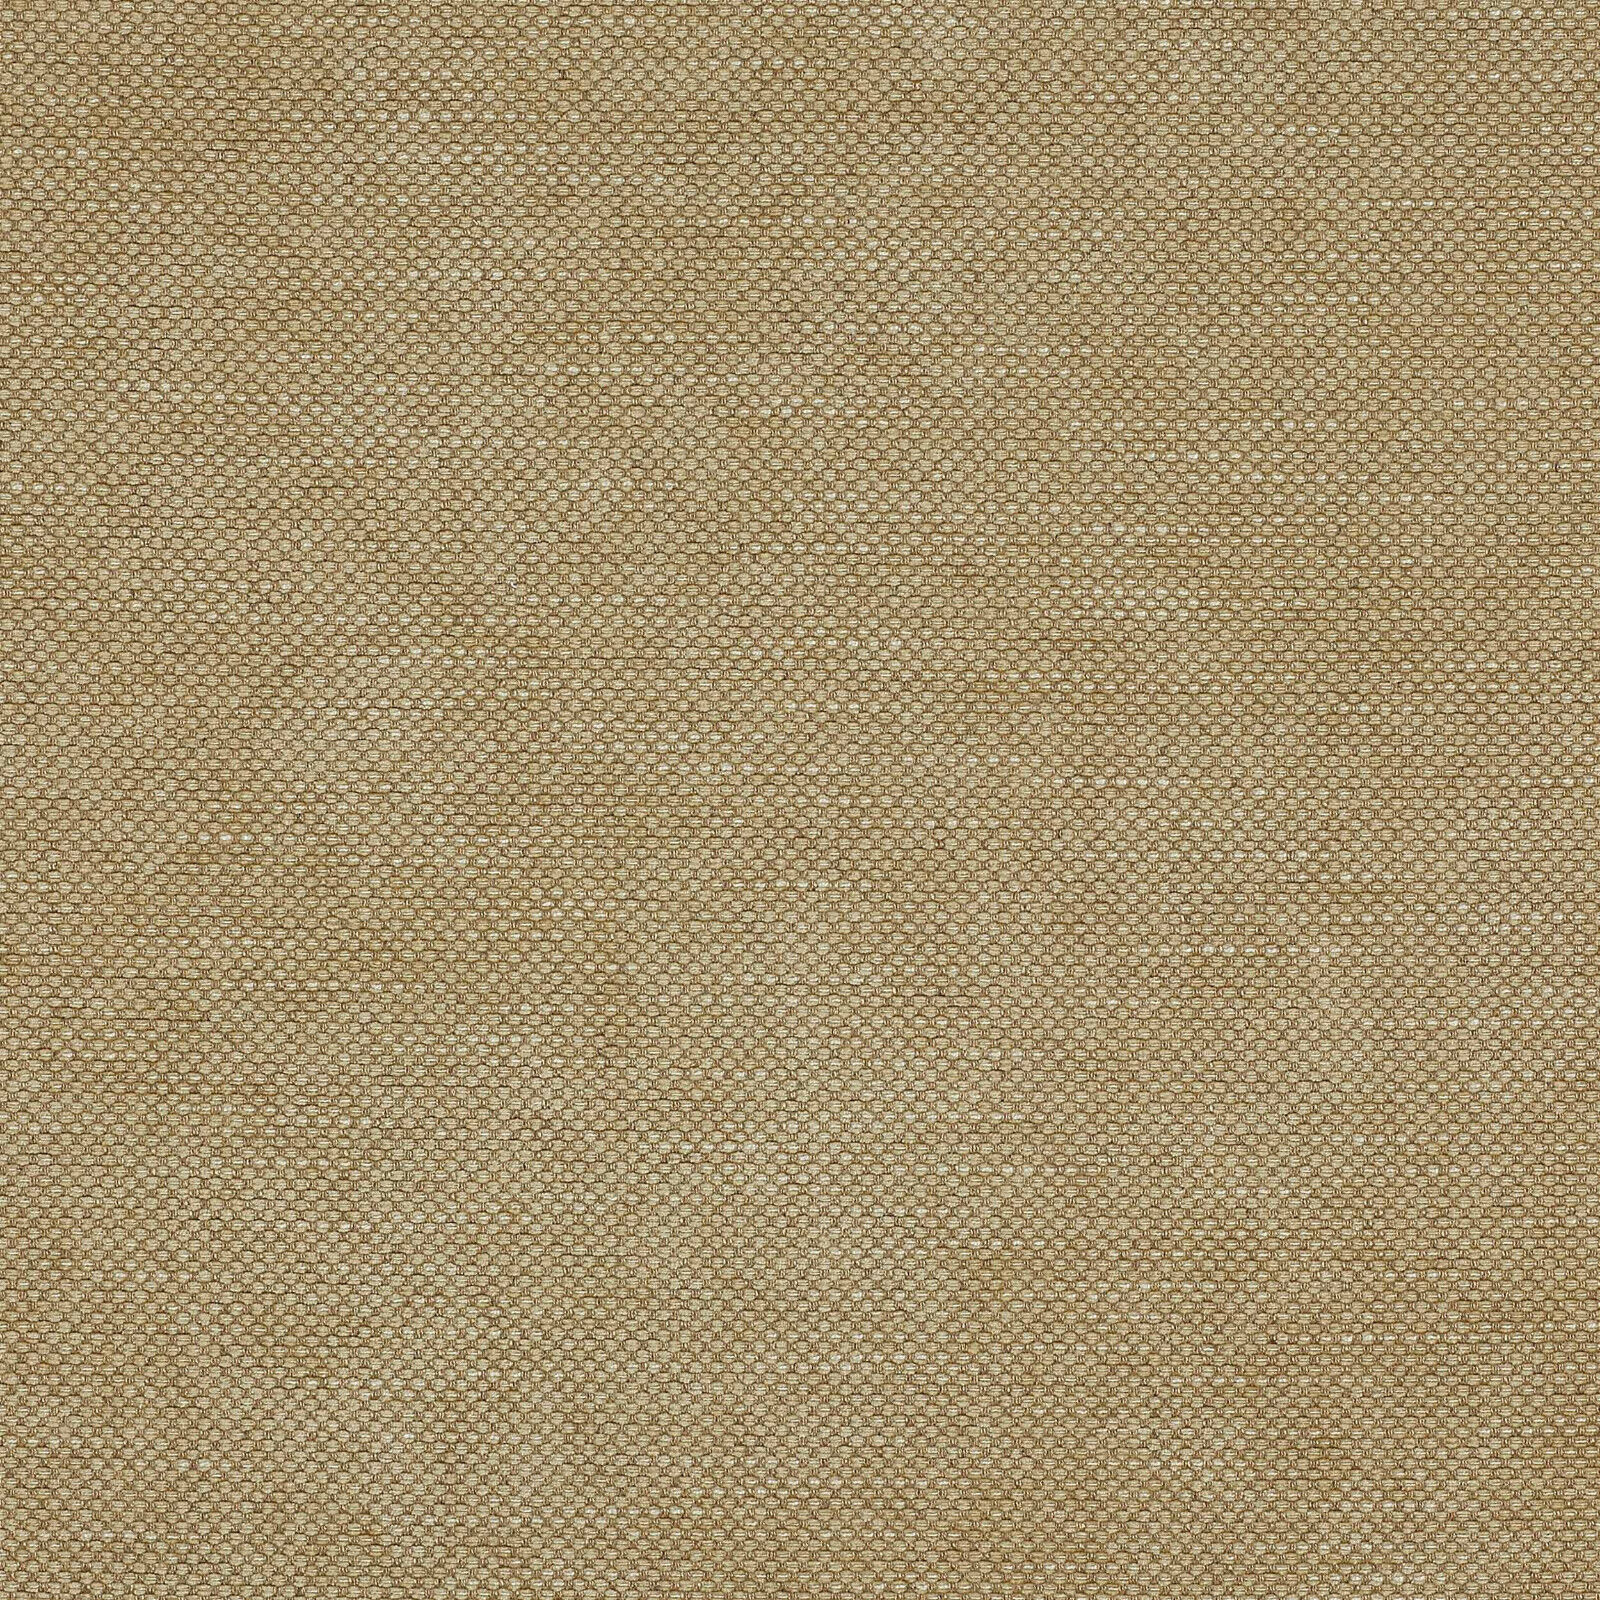 Colefax & Fowler Slubby Basketweave Fabric- Stratford / Sand 2.25 yds F3831-13